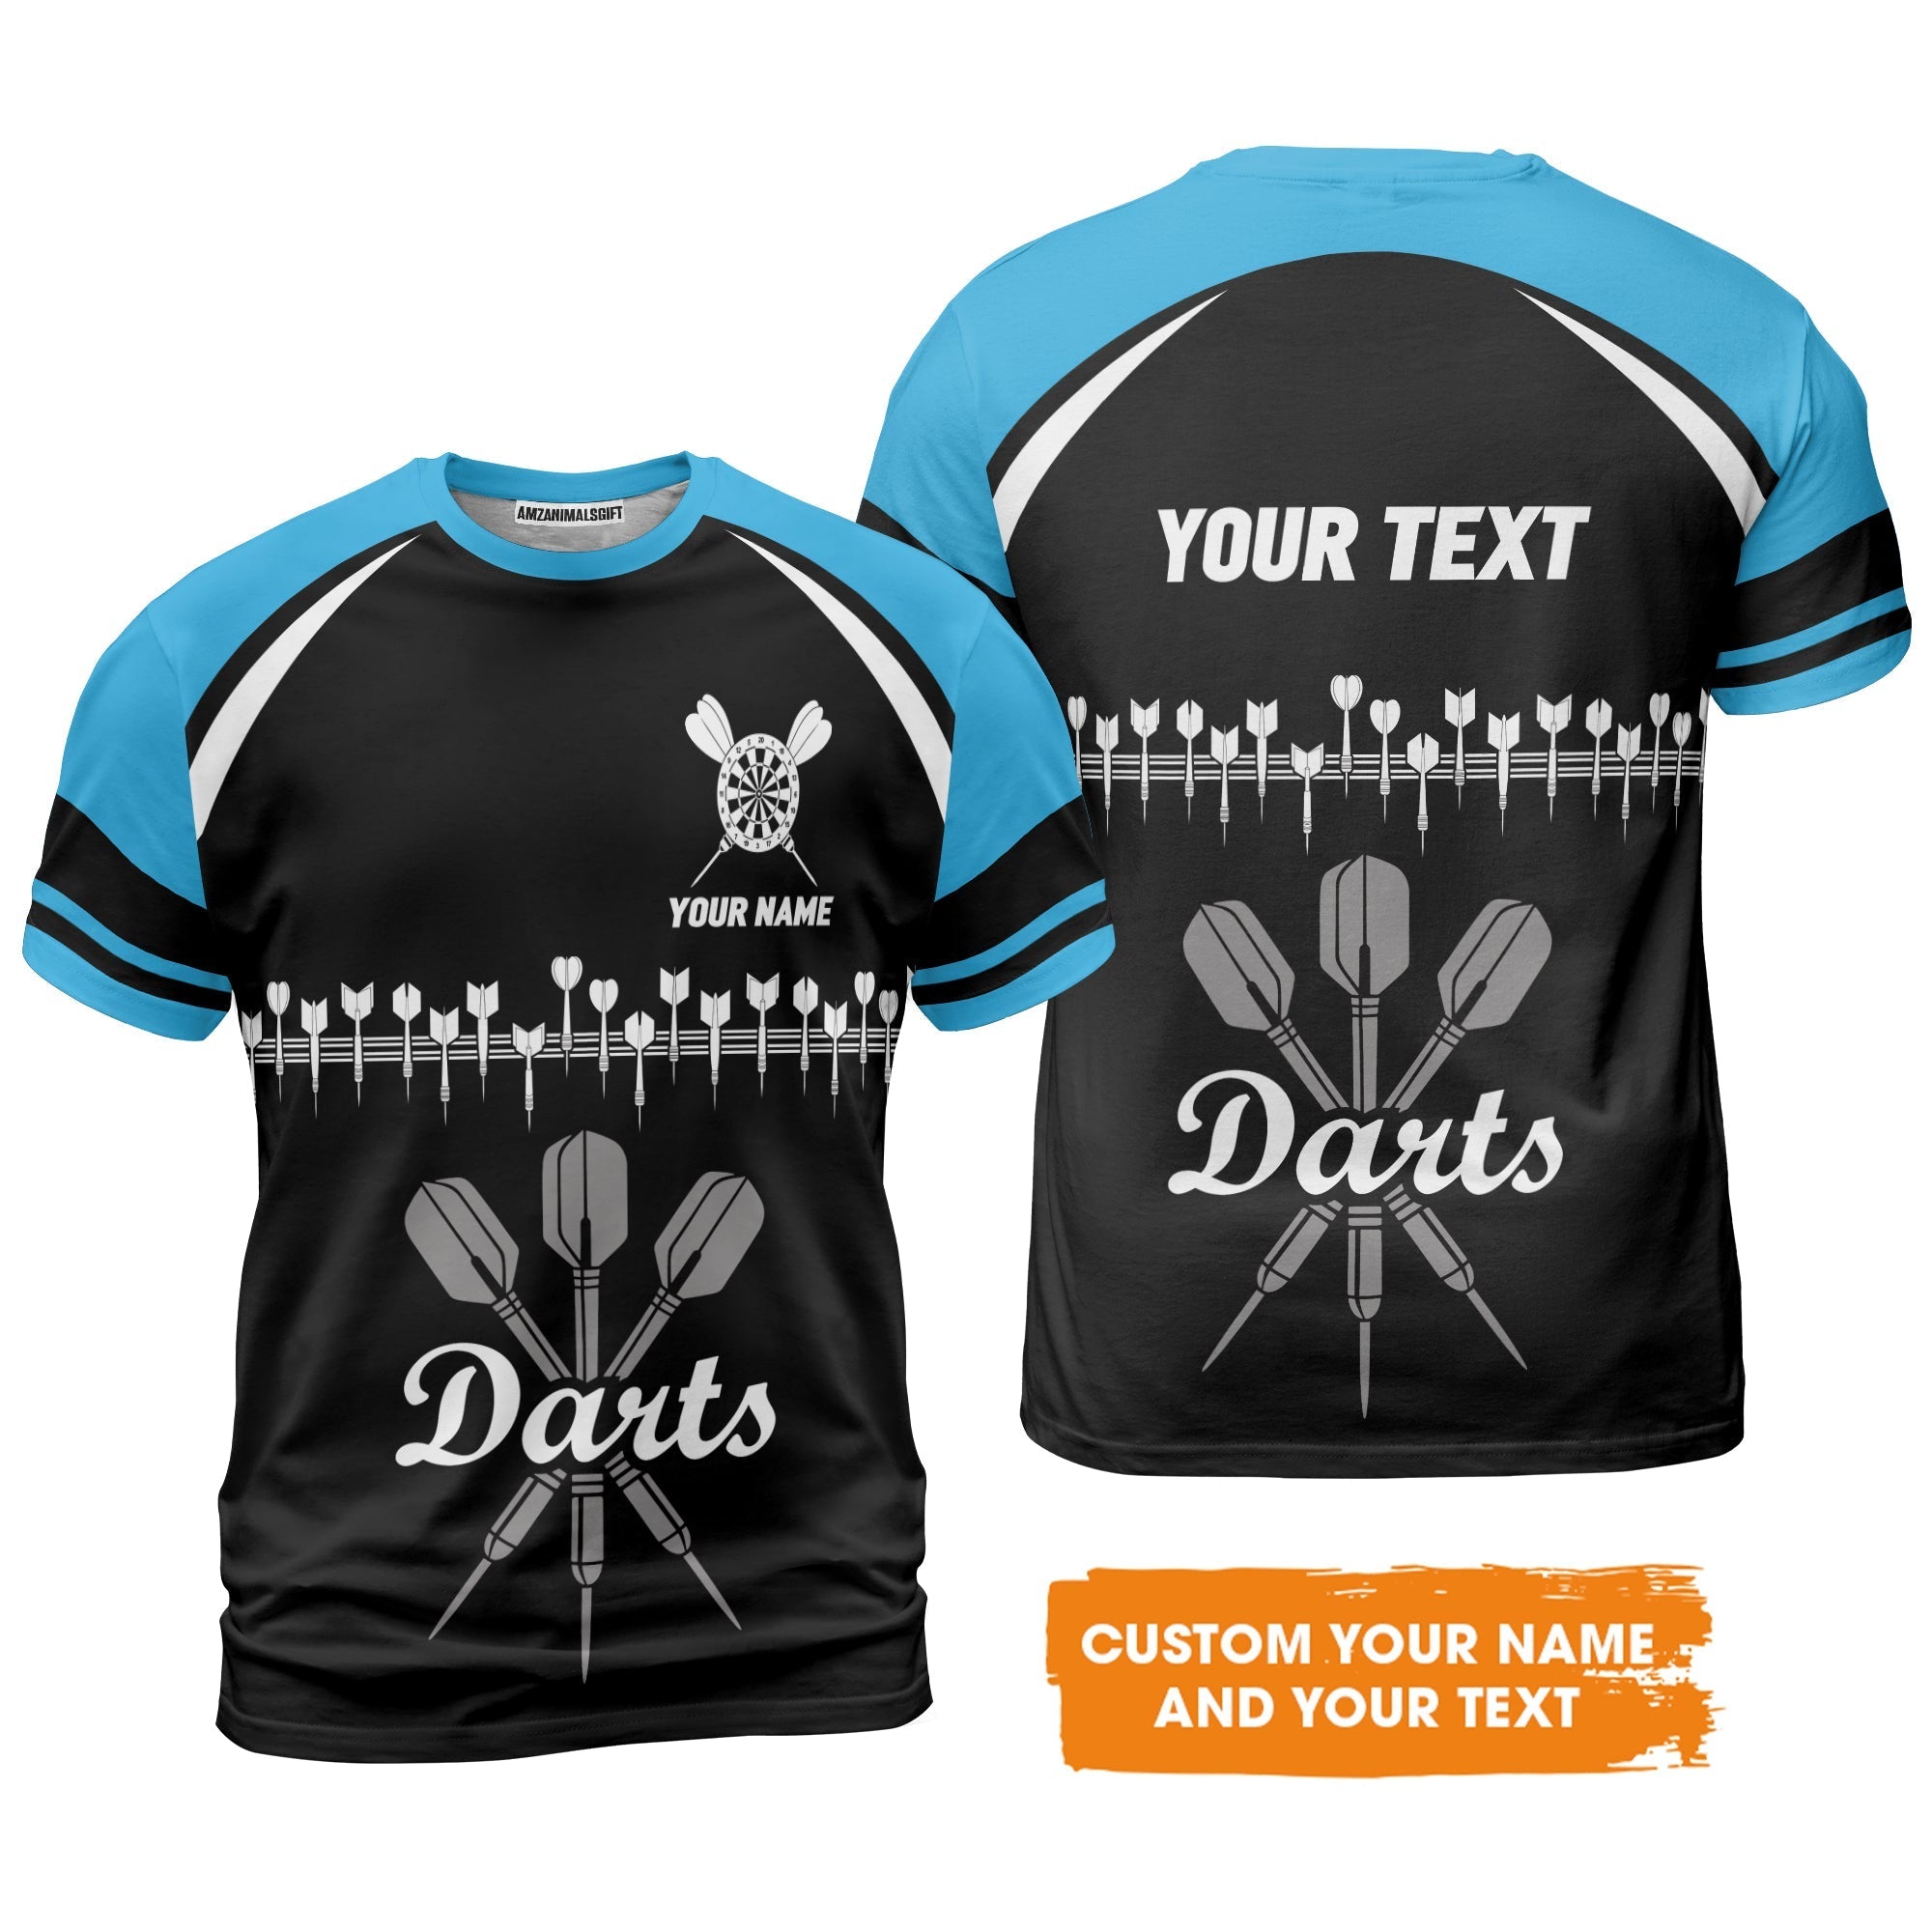 Customized Name & Text Darts T-Shirt, Personalized Darts Team Blue T-Shirt - Perfect Gift For Darts Lovers